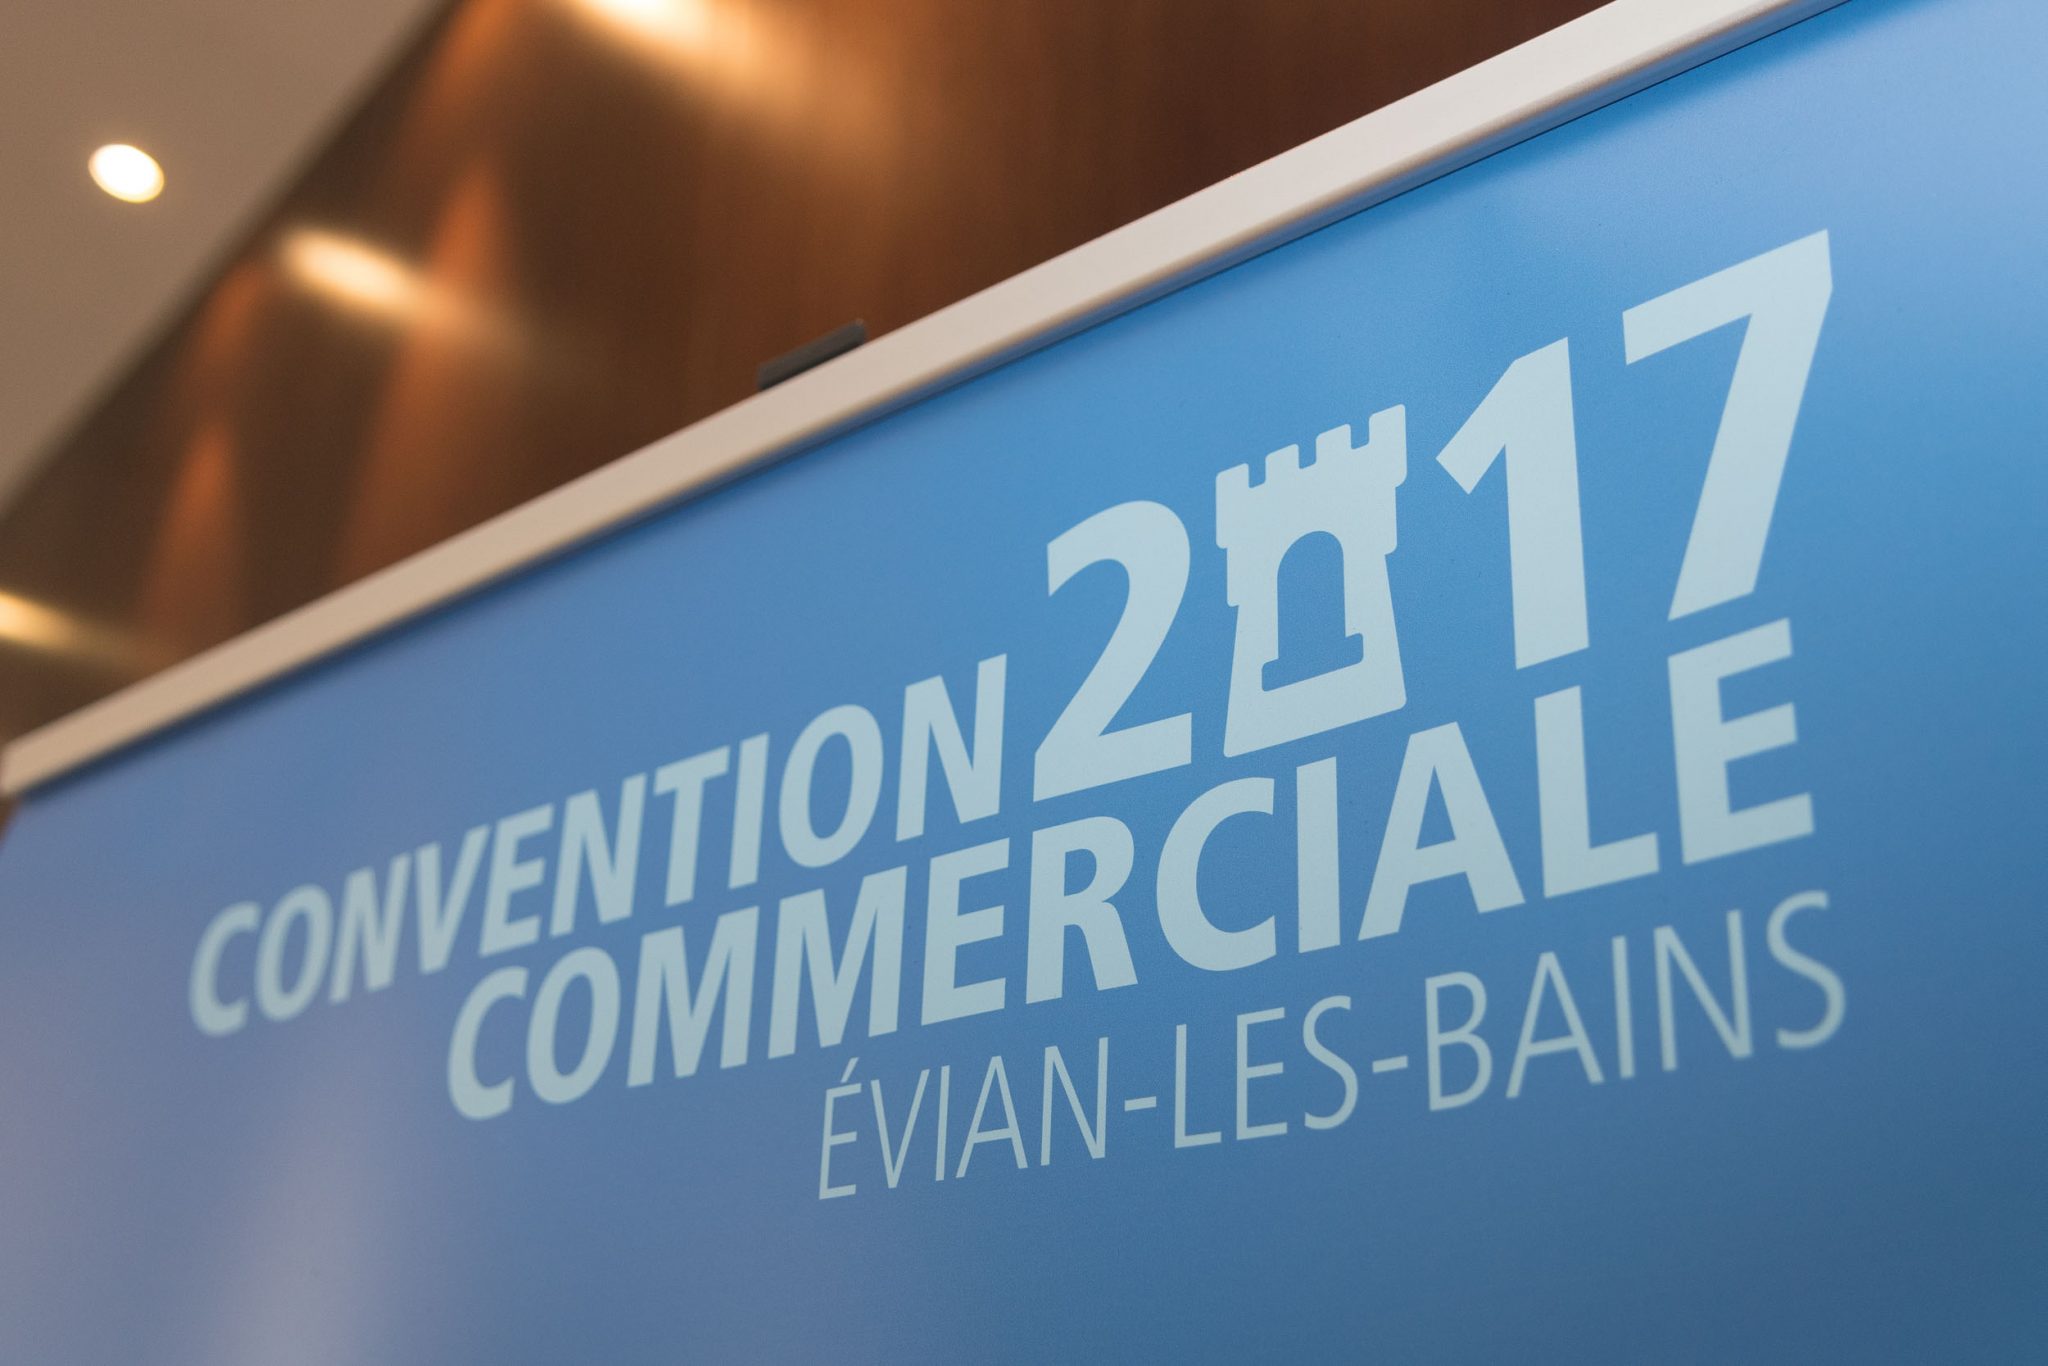 Convention Commerciale Evian Hilton